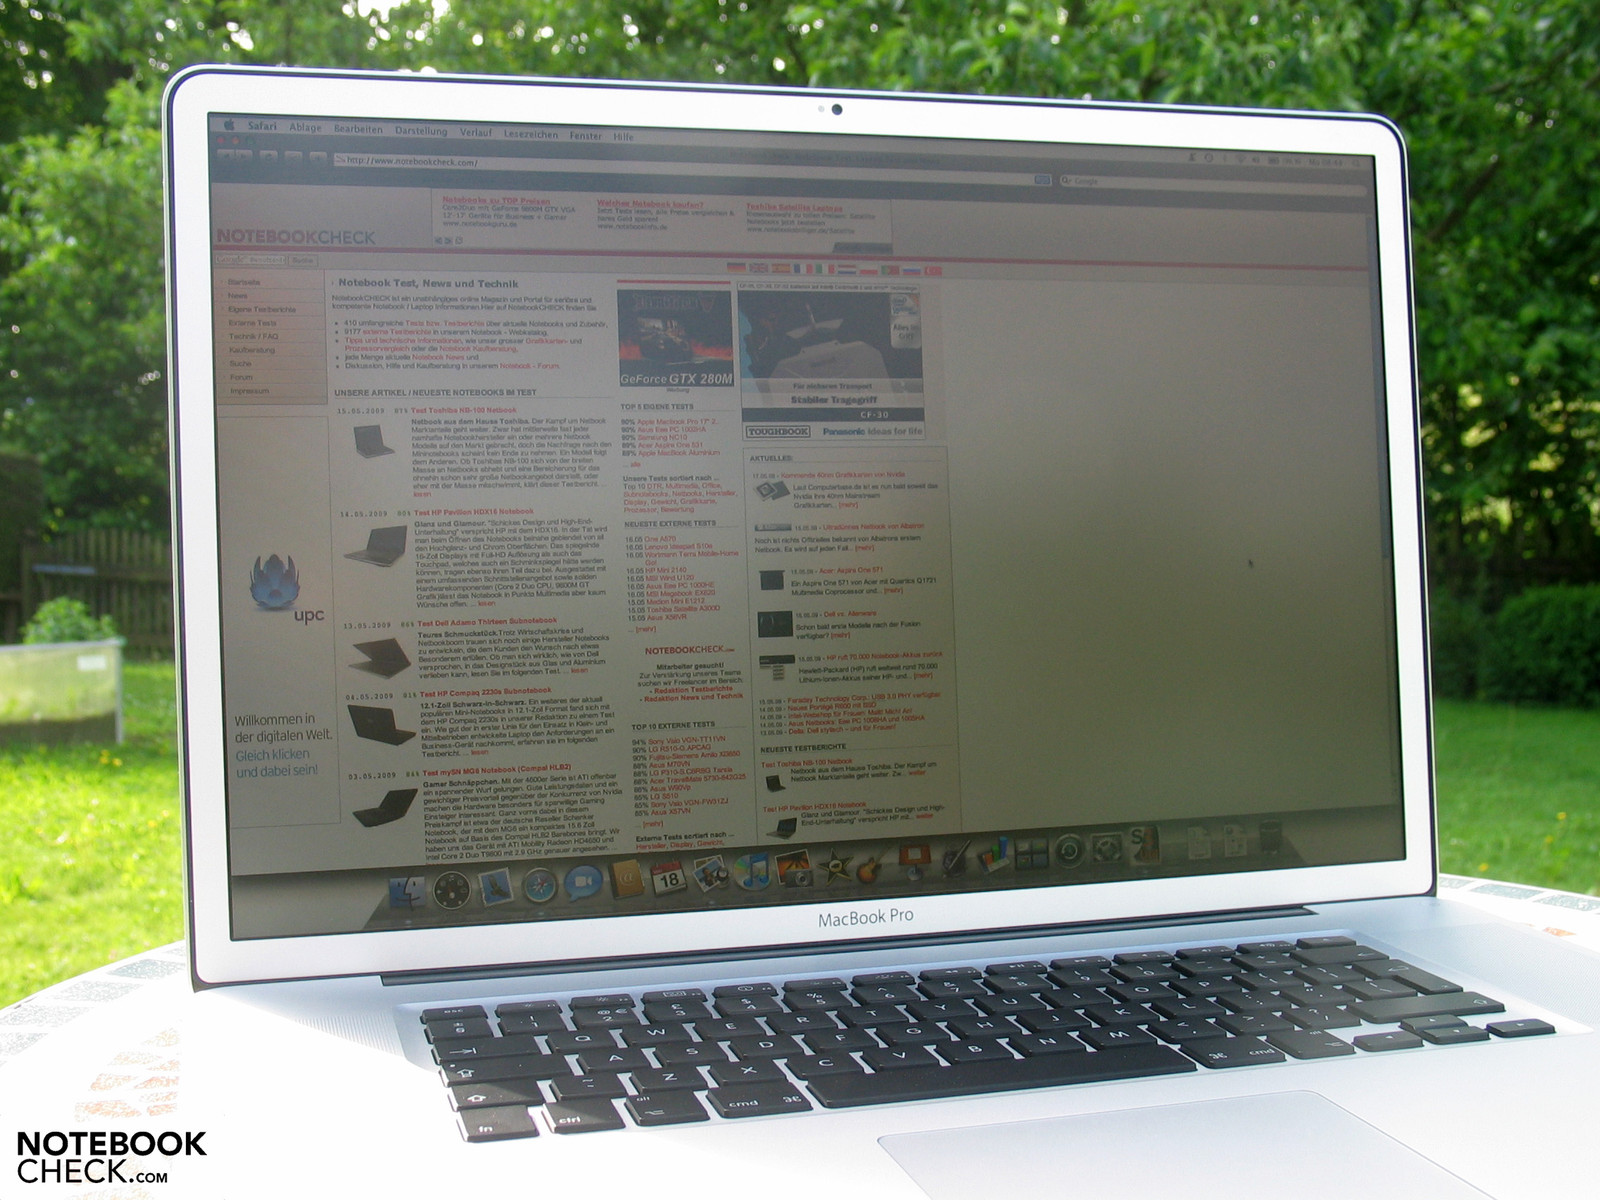 Ноутбук с матовым экраном. MACBOOK Pro 17 2009. Матовый экран MACBOOK. Матовый экран ноутбука. MACBOOK Pro Matte display.